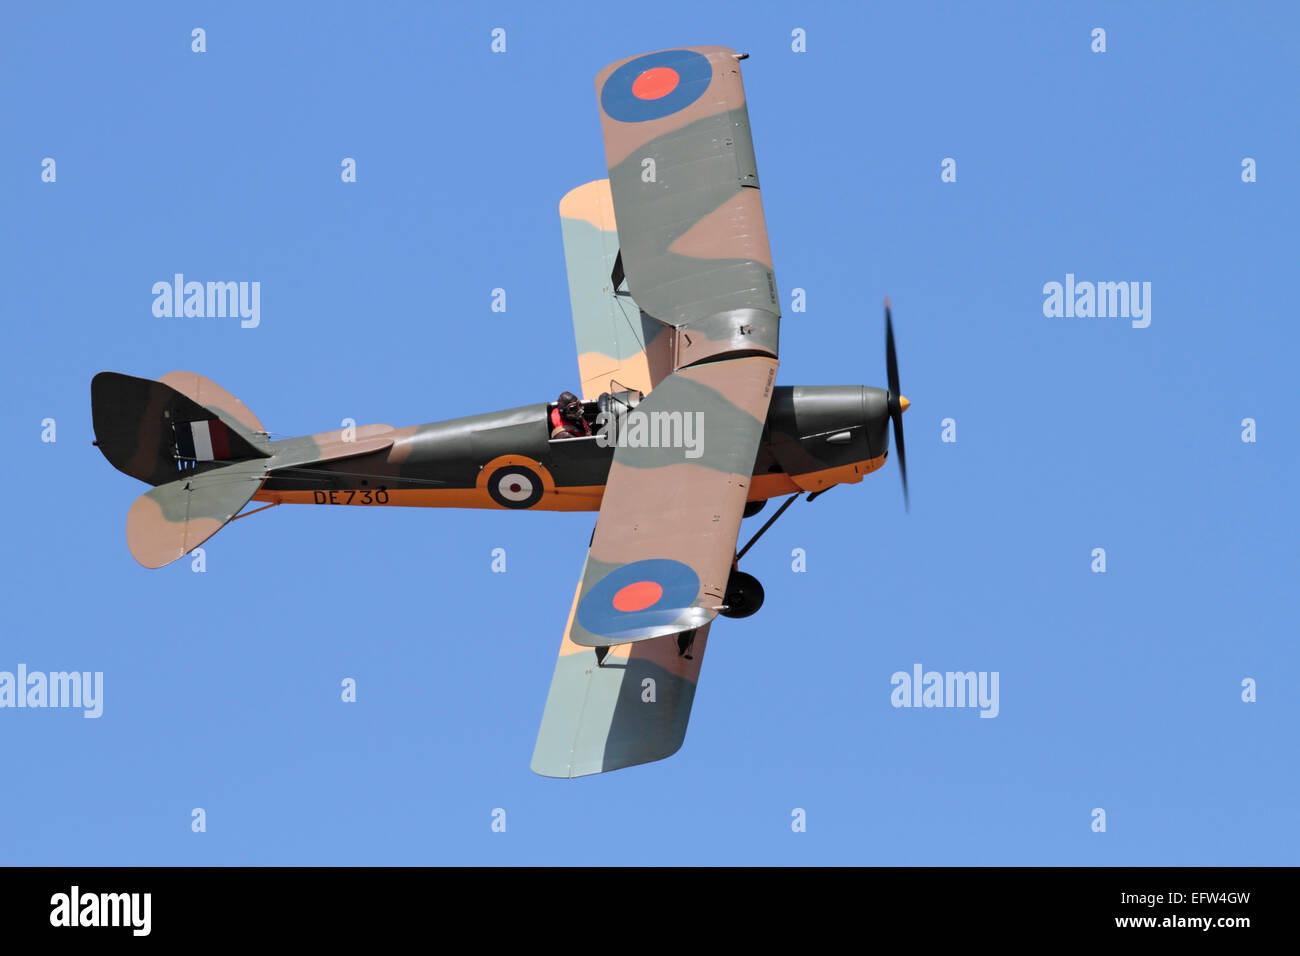 De Havilland Tiger Moth avion biplan d'époque aux couleurs d'un avion d'entraînement de la Royal Air Force de la Seconde Guerre mondiale qui vole dans les airs contre un ciel bleu Banque D'Images